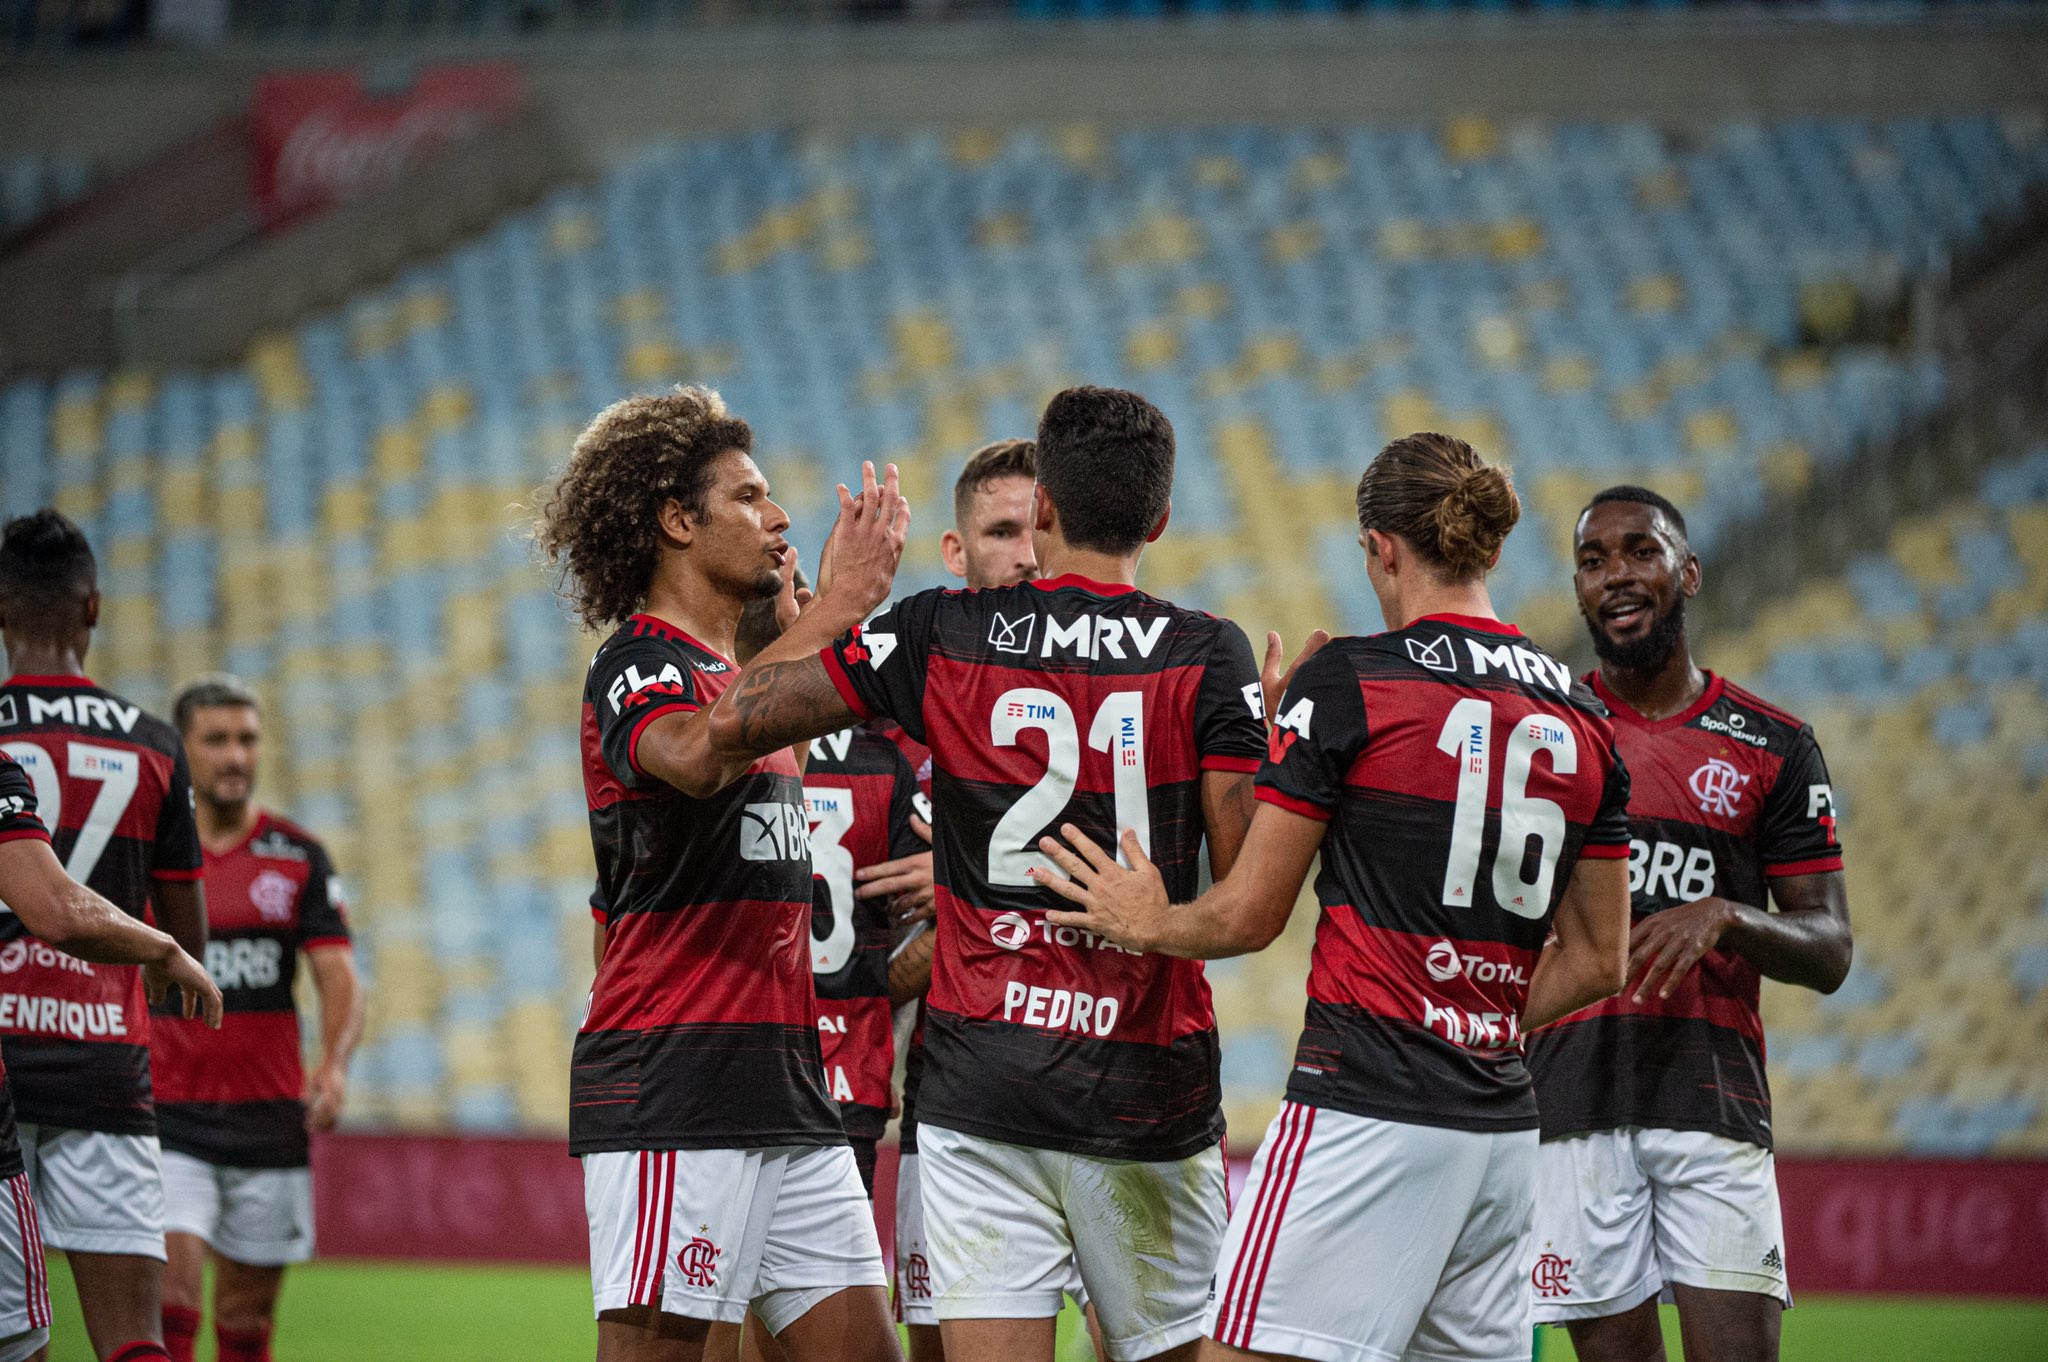 A transmissão própria e os bons números obtidos pelo Flamengo podem abrir possibilidades para outros clubes brasileiros furarem a exclusividade com a Globo